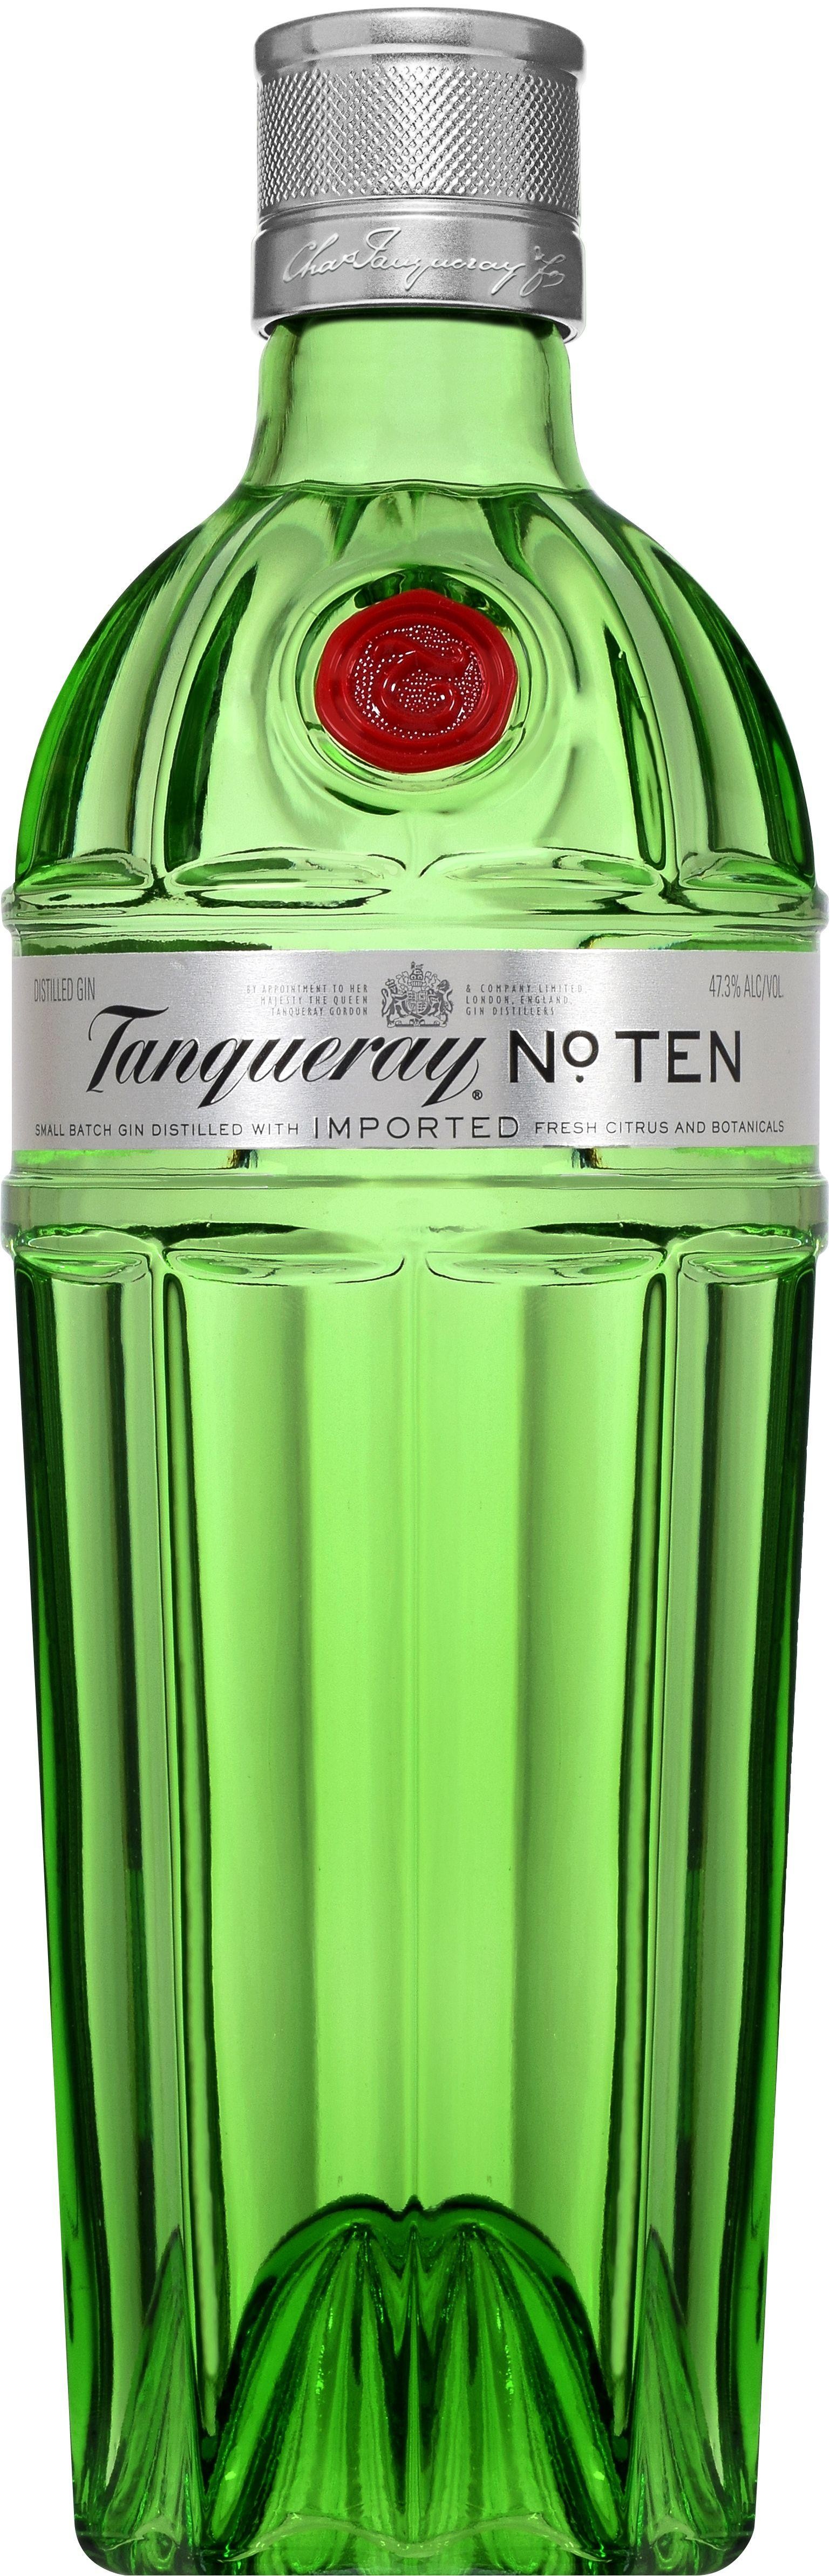 Tanqueray No. Ten Gin 750